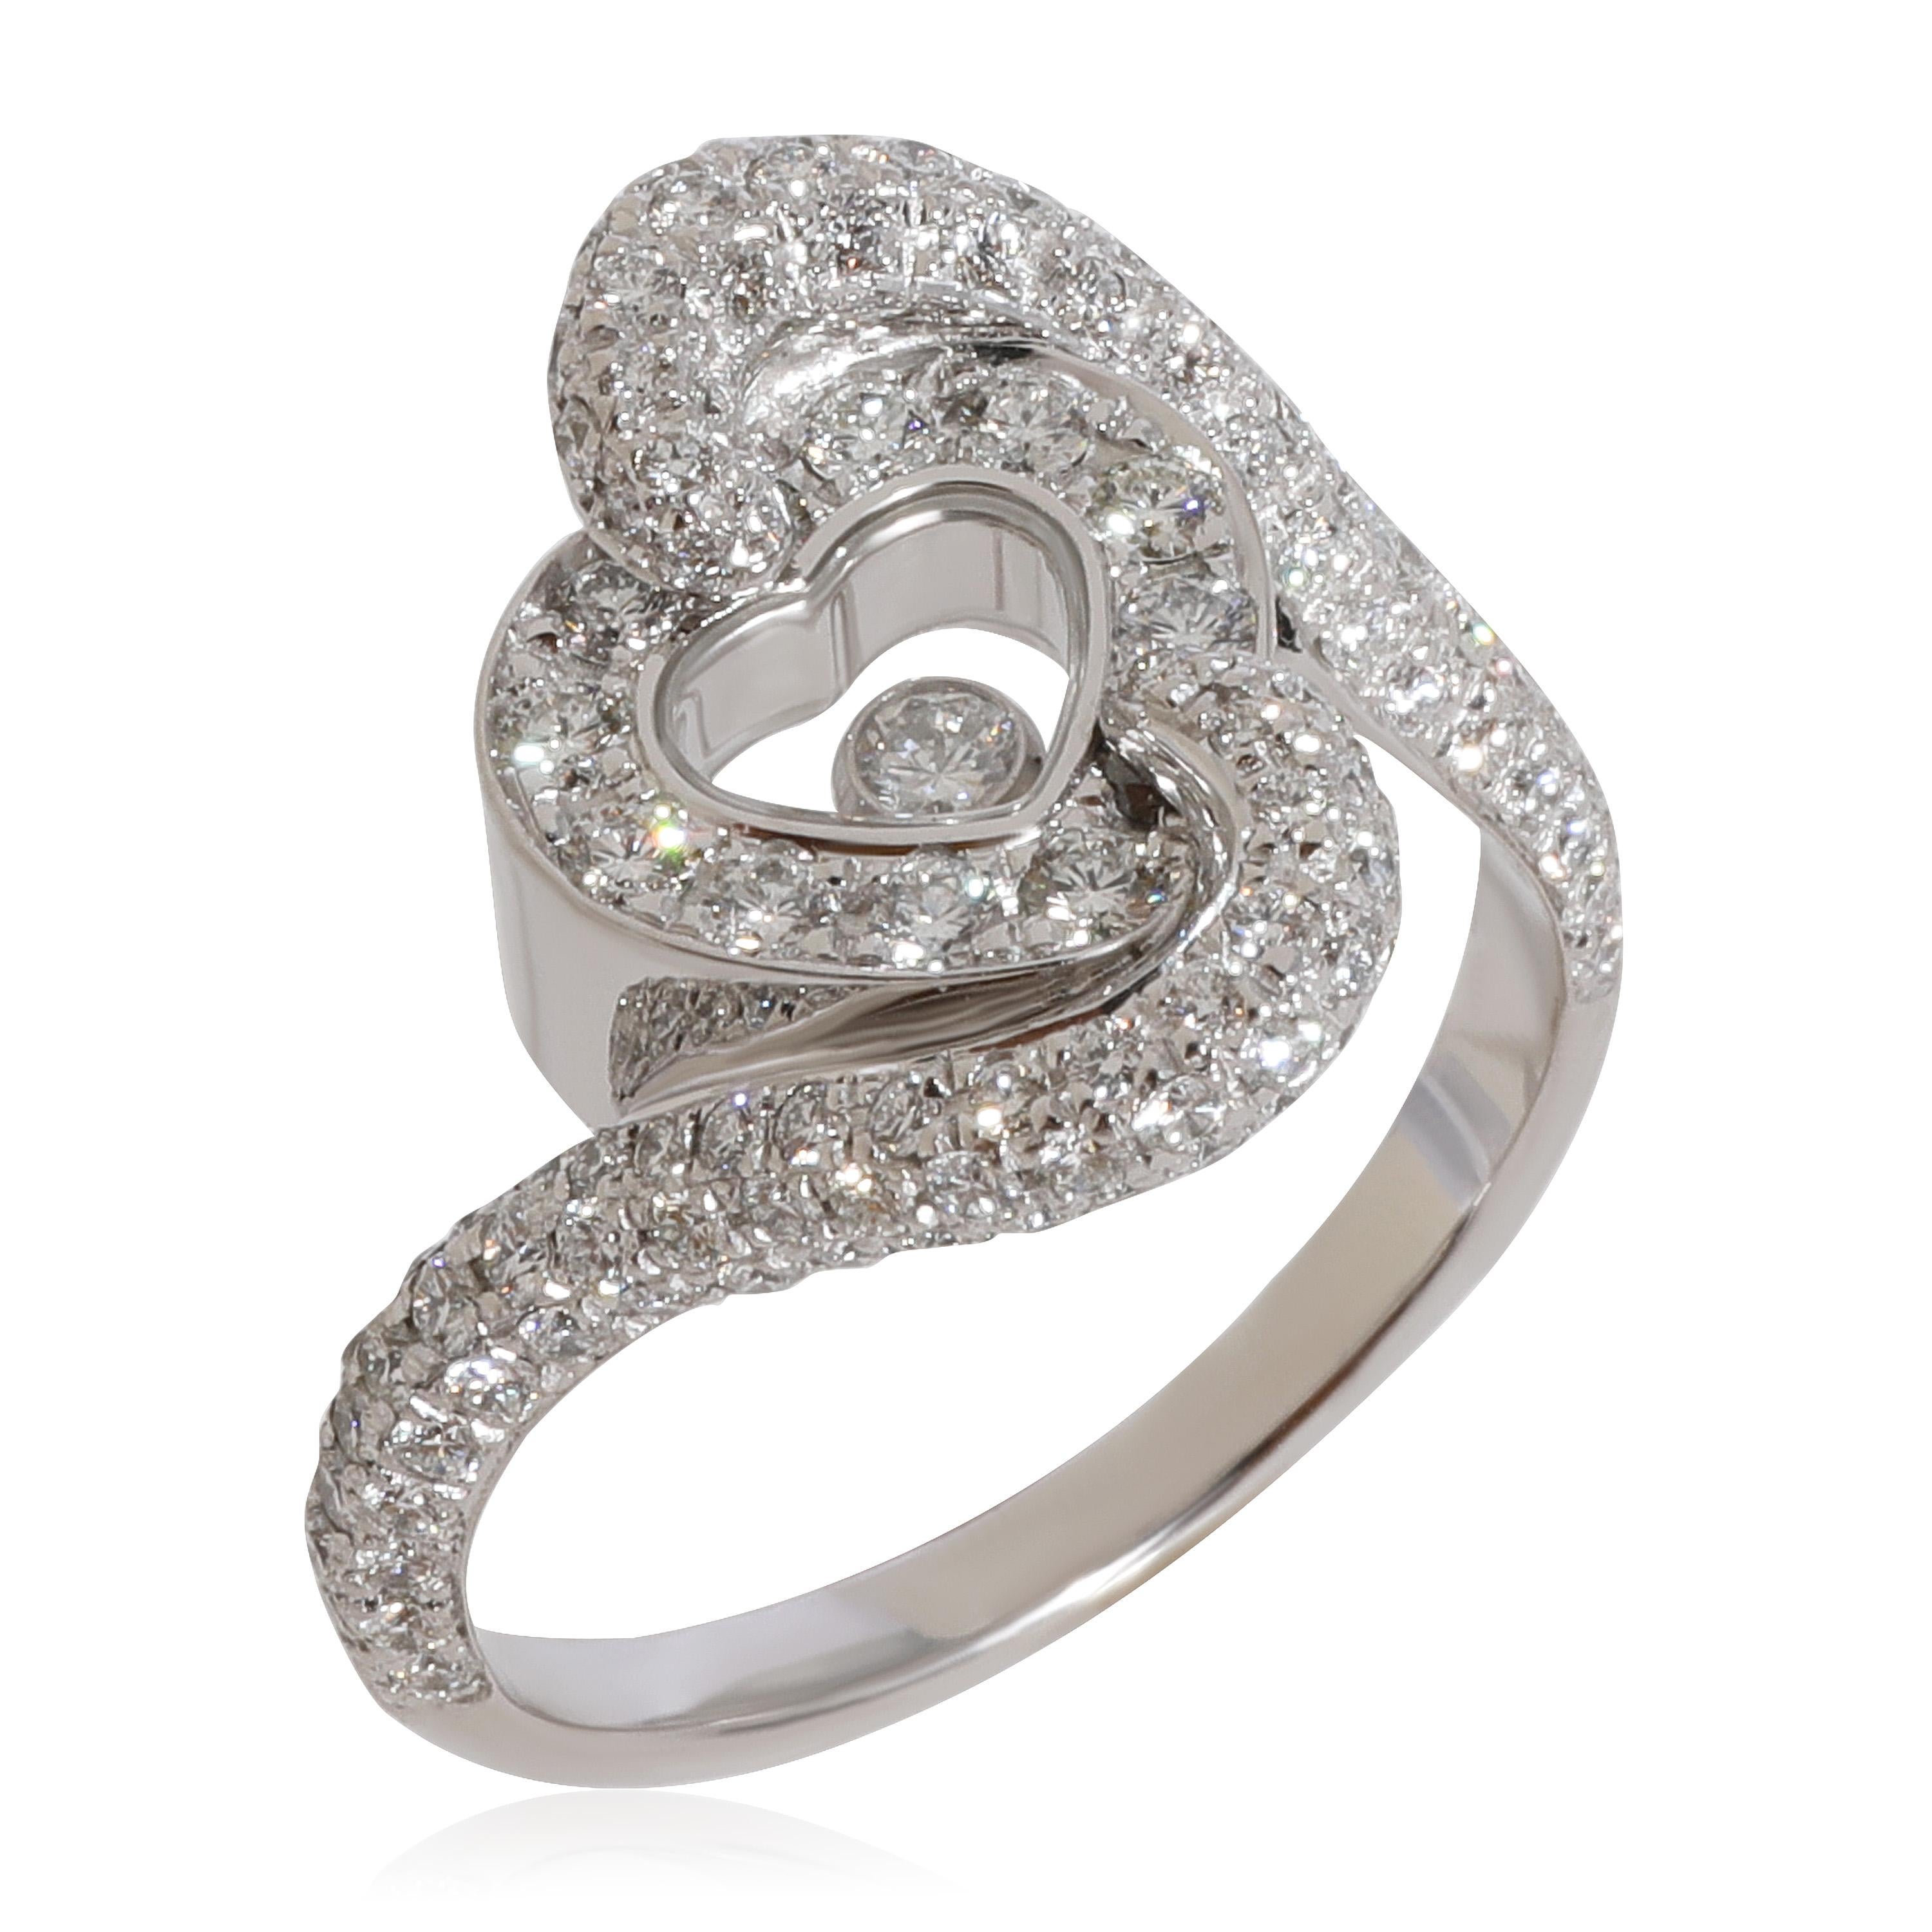 Chopard Happy Diamond Herz  Ring aus 18k Weißgold 0,86 CTW

PRIMÄRE DETAILS
SKU: 124365
Auflistung Titel: Chopard Happy Diamond Herz  Ring aus 18k Weißgold 0,86 CTW
Zustand Beschreibung: Verkauft für 13350 USD. In ausgezeichnetem Zustand und